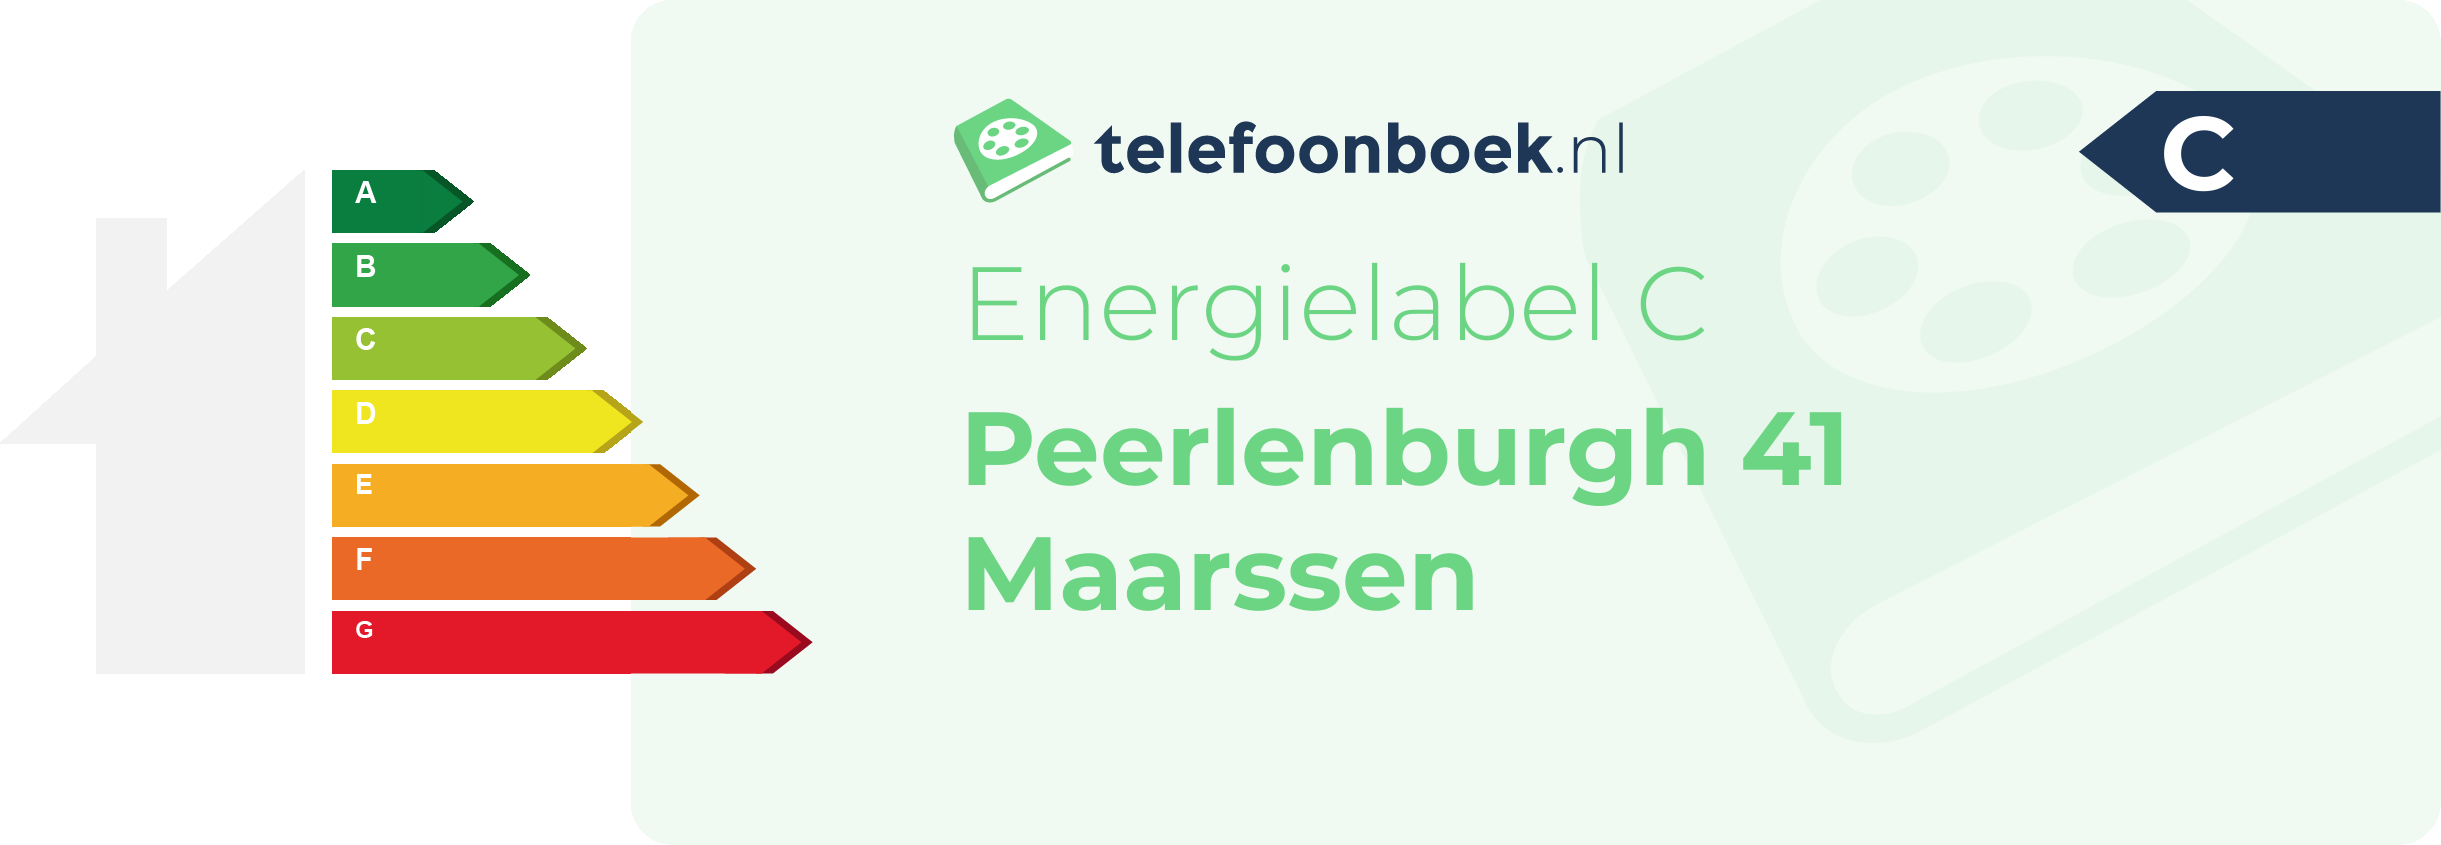 Energielabel Peerlenburgh 41 Maarssen